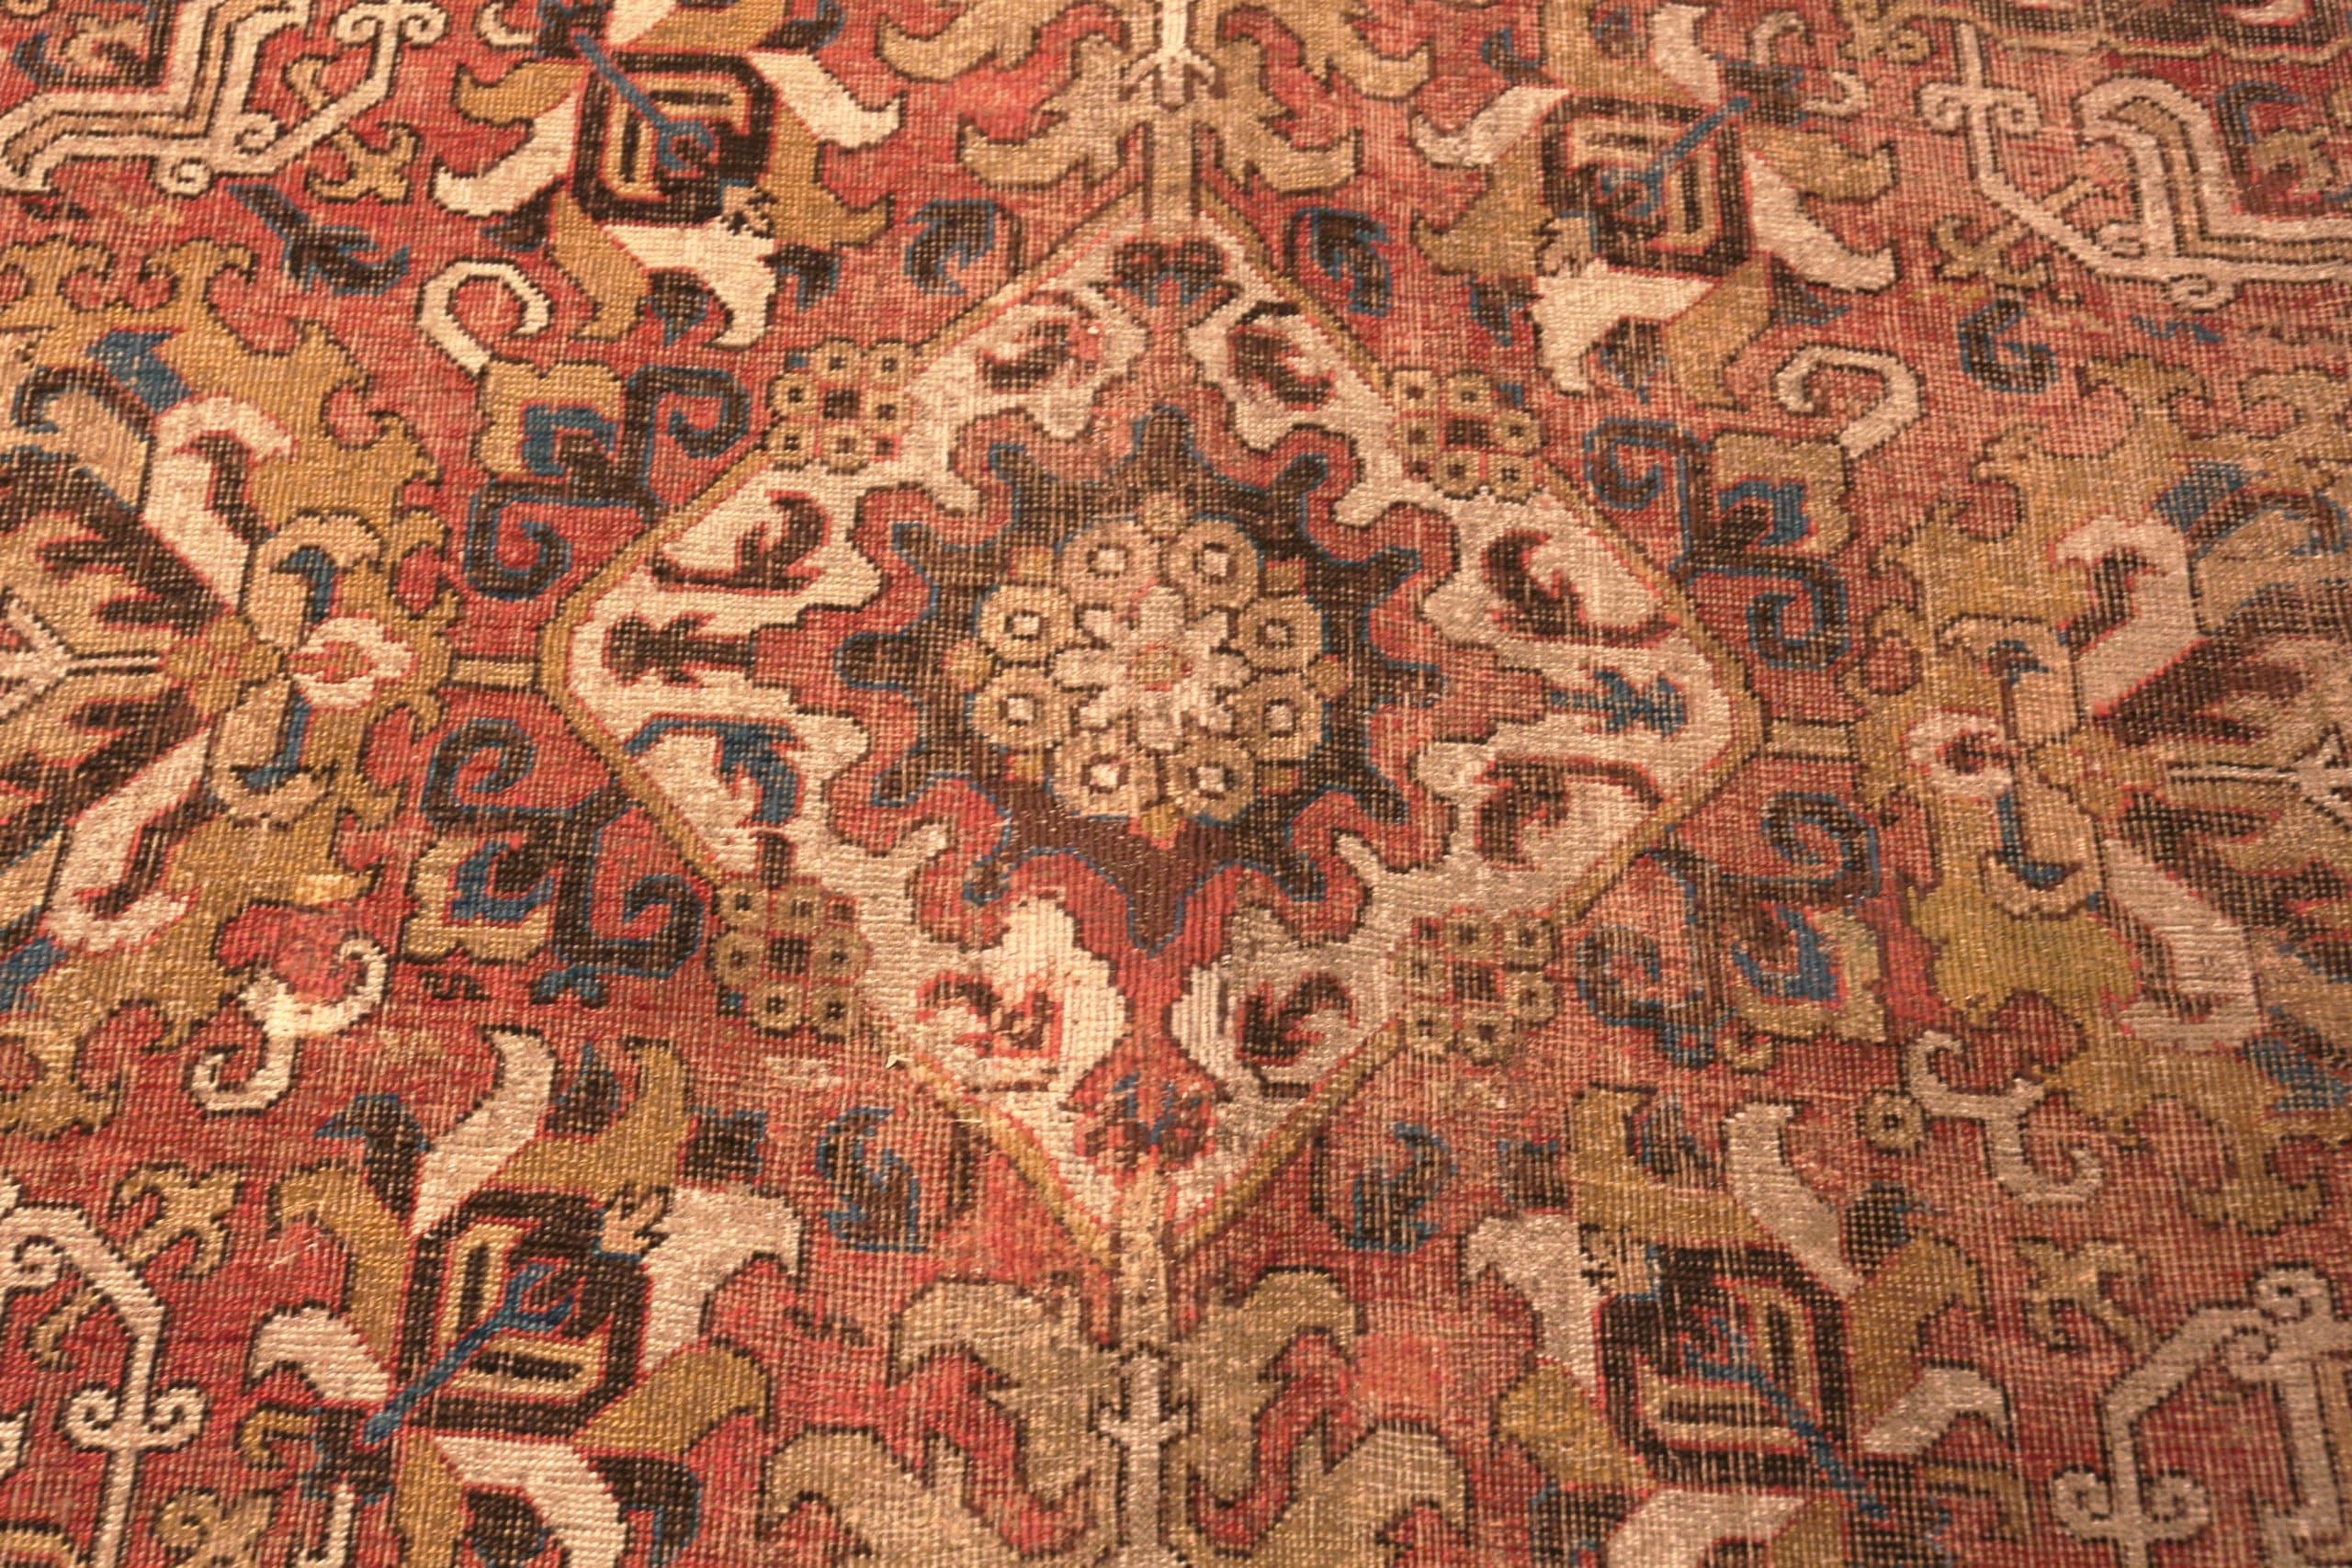 18th century carpet